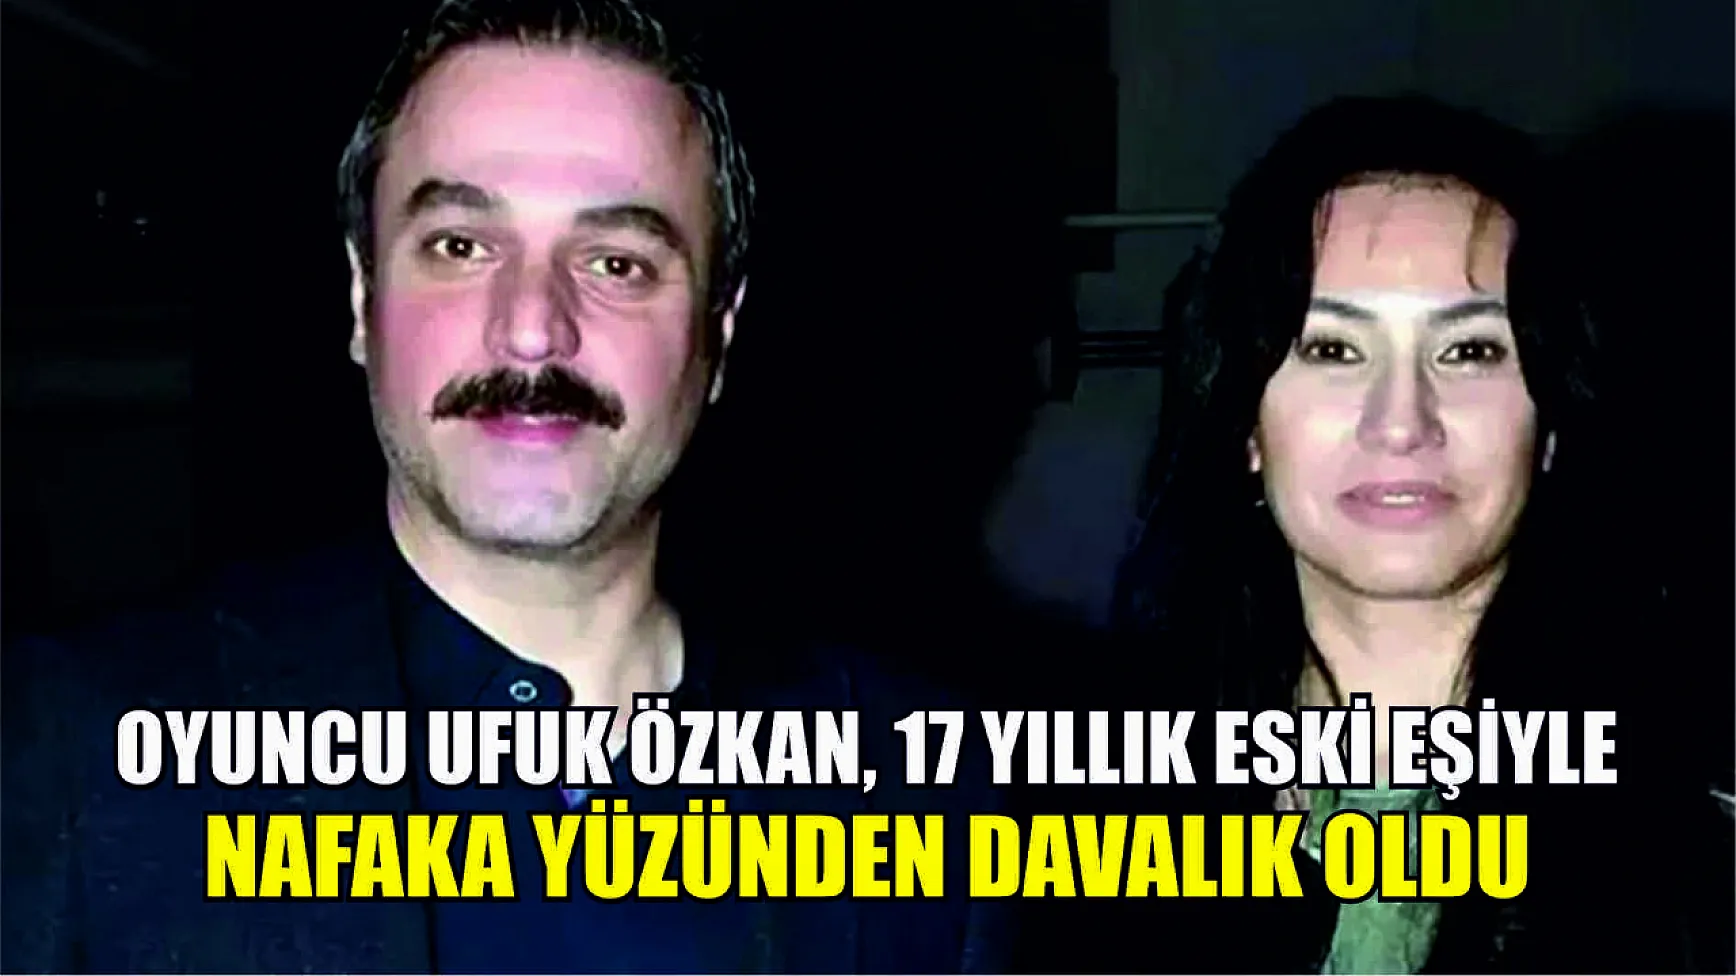 Oyuncu Ufuk Özkan, 17 yıllık eski eşiyle nafaka yüzünden davalık oldu